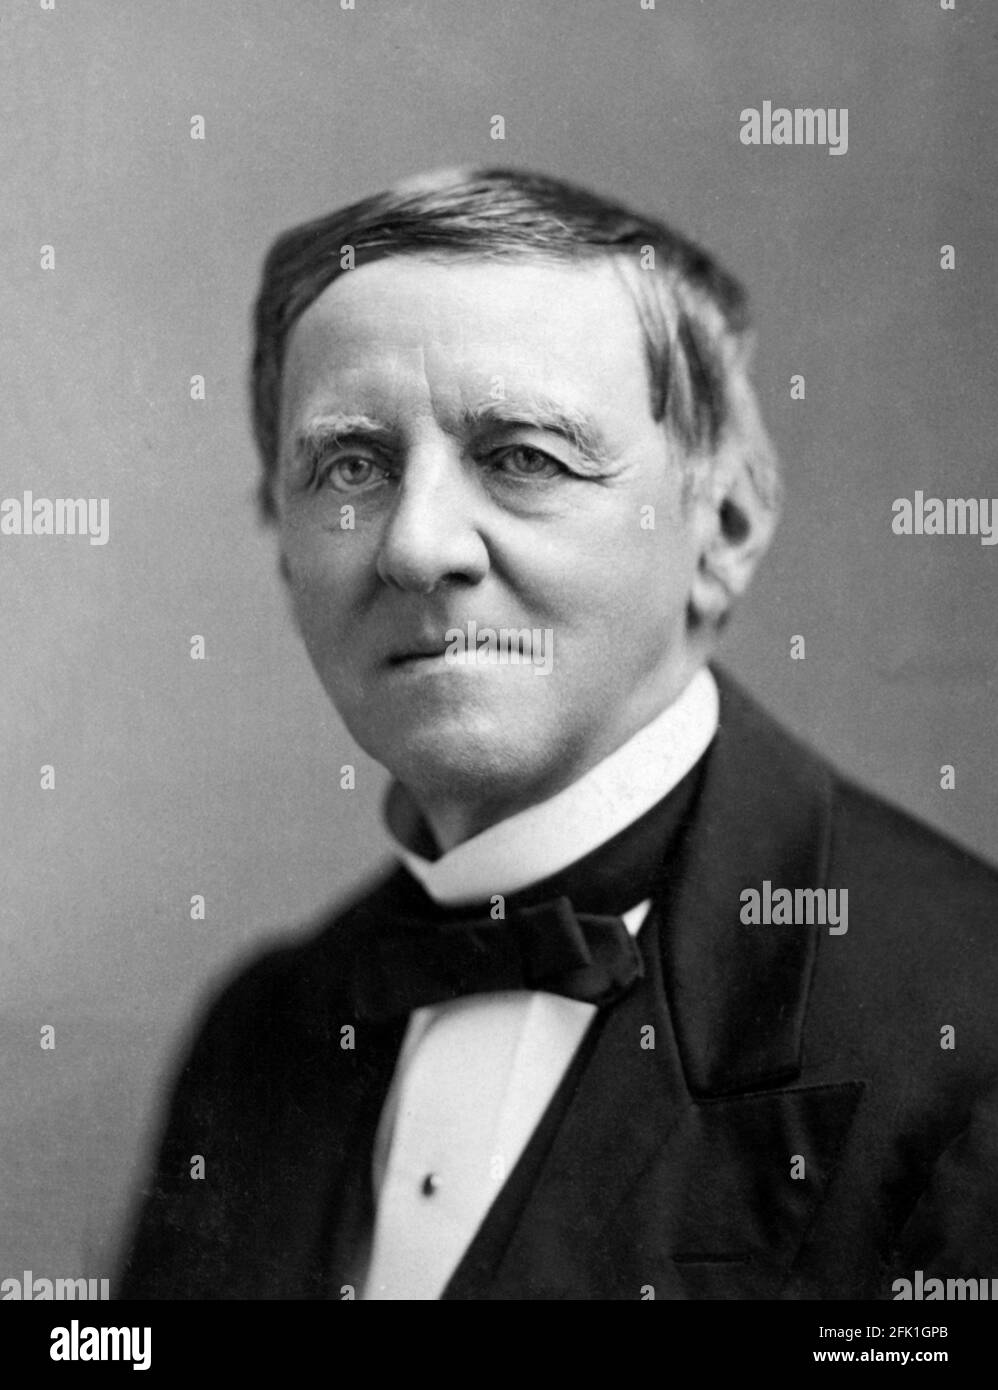 Samuel Tilden. Porträt des amerikanischen Politikers, der als 25. Gouverneur von New York diente, Samuel Jones Tilden (1814-1886), von José María Mora, c. 1870 Stockfoto